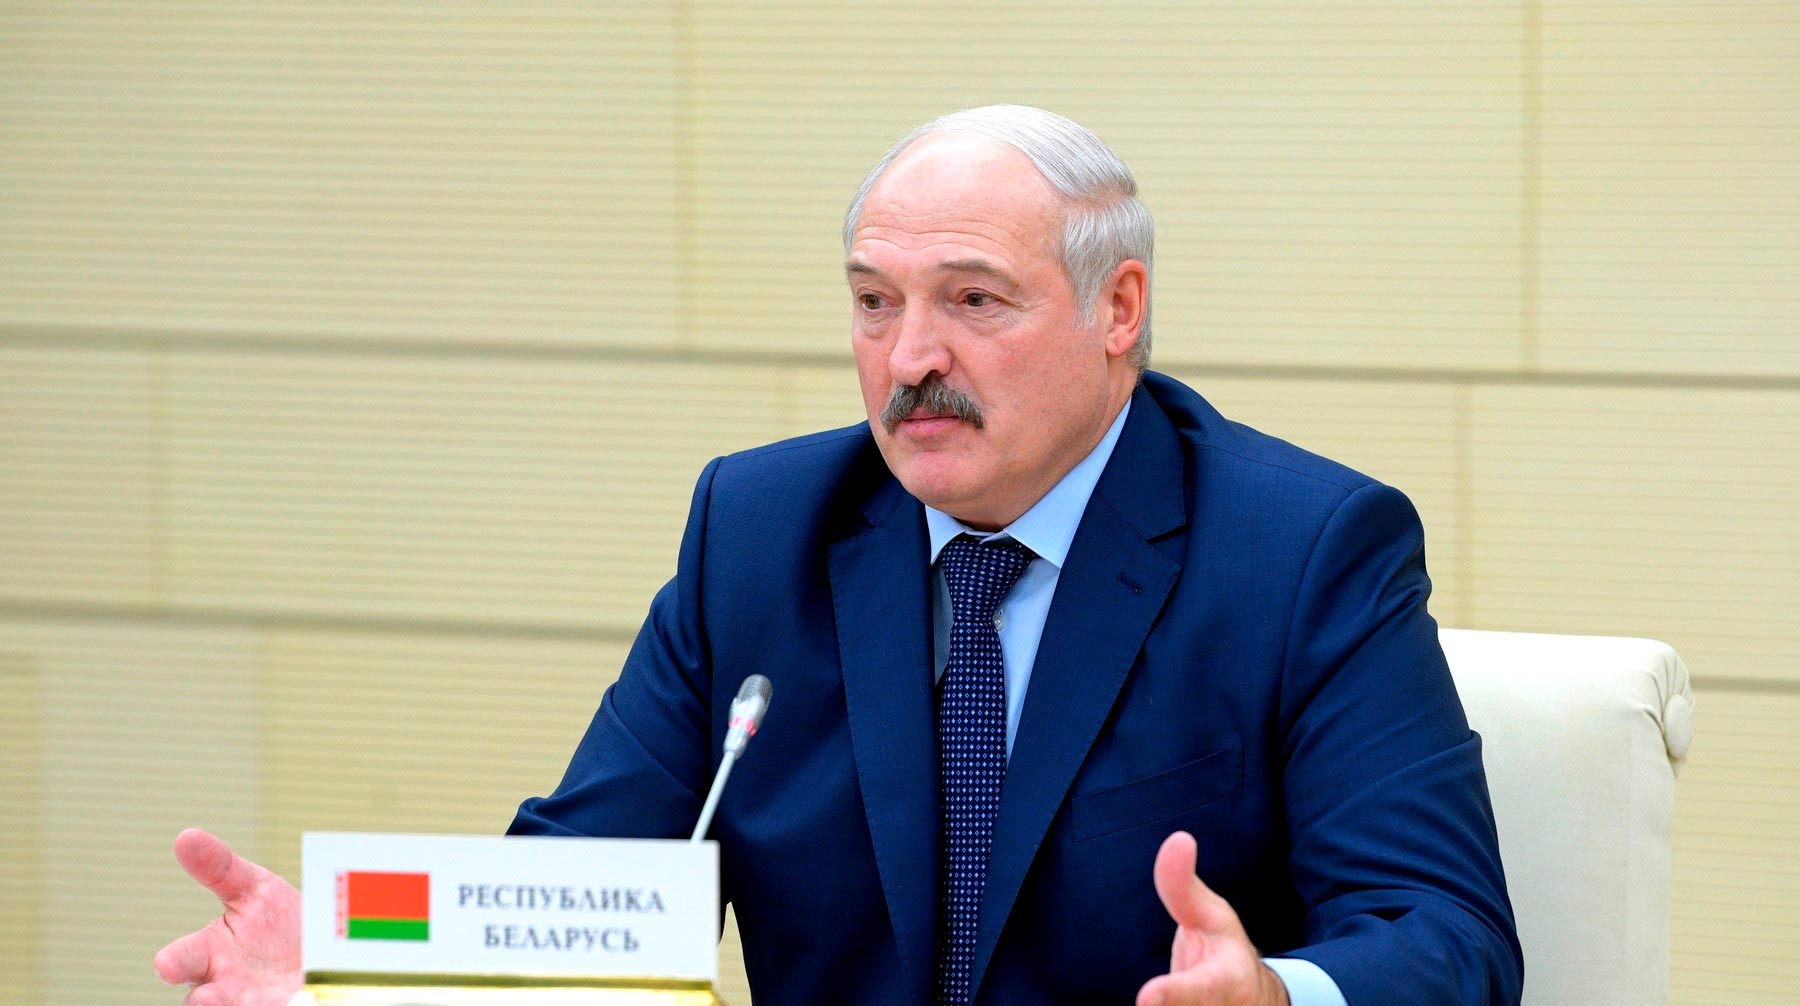 Белорусский лидер также отметил, что в пандемии нового коронавируса «болезнь занимает половину, остальное — политика» Фото: © Global Look Press / Kremlin Pool